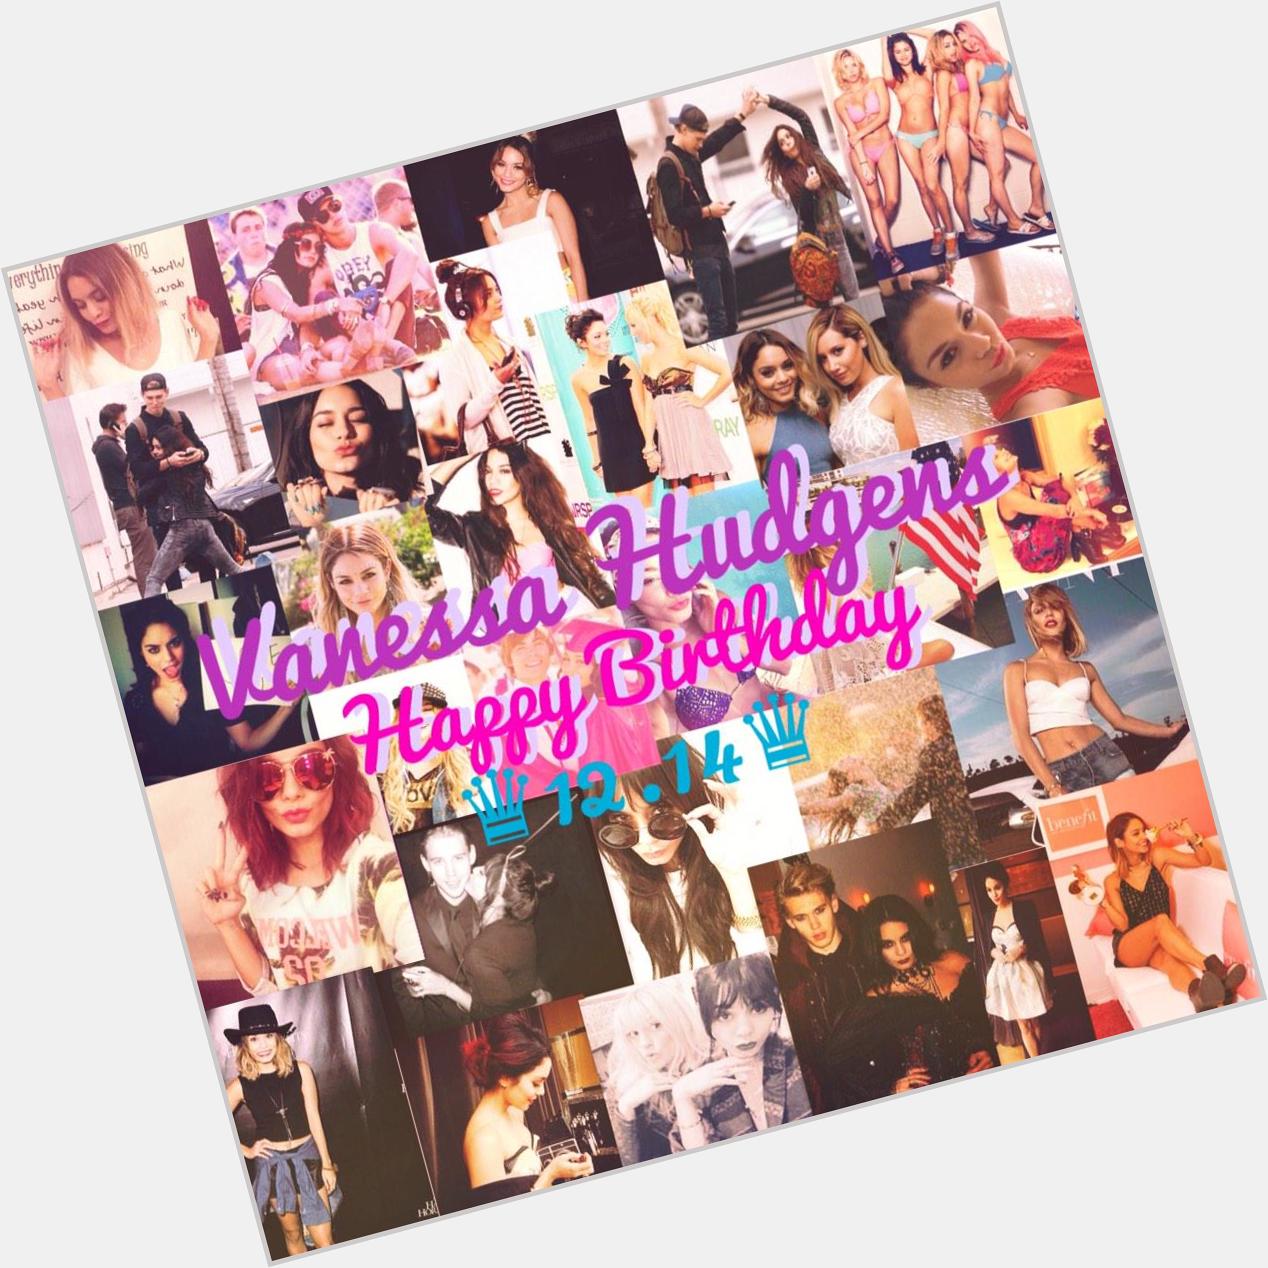  Vanessa Hudgens Happy Birthday!!!!!

ilysm  ilysm  ilysm   